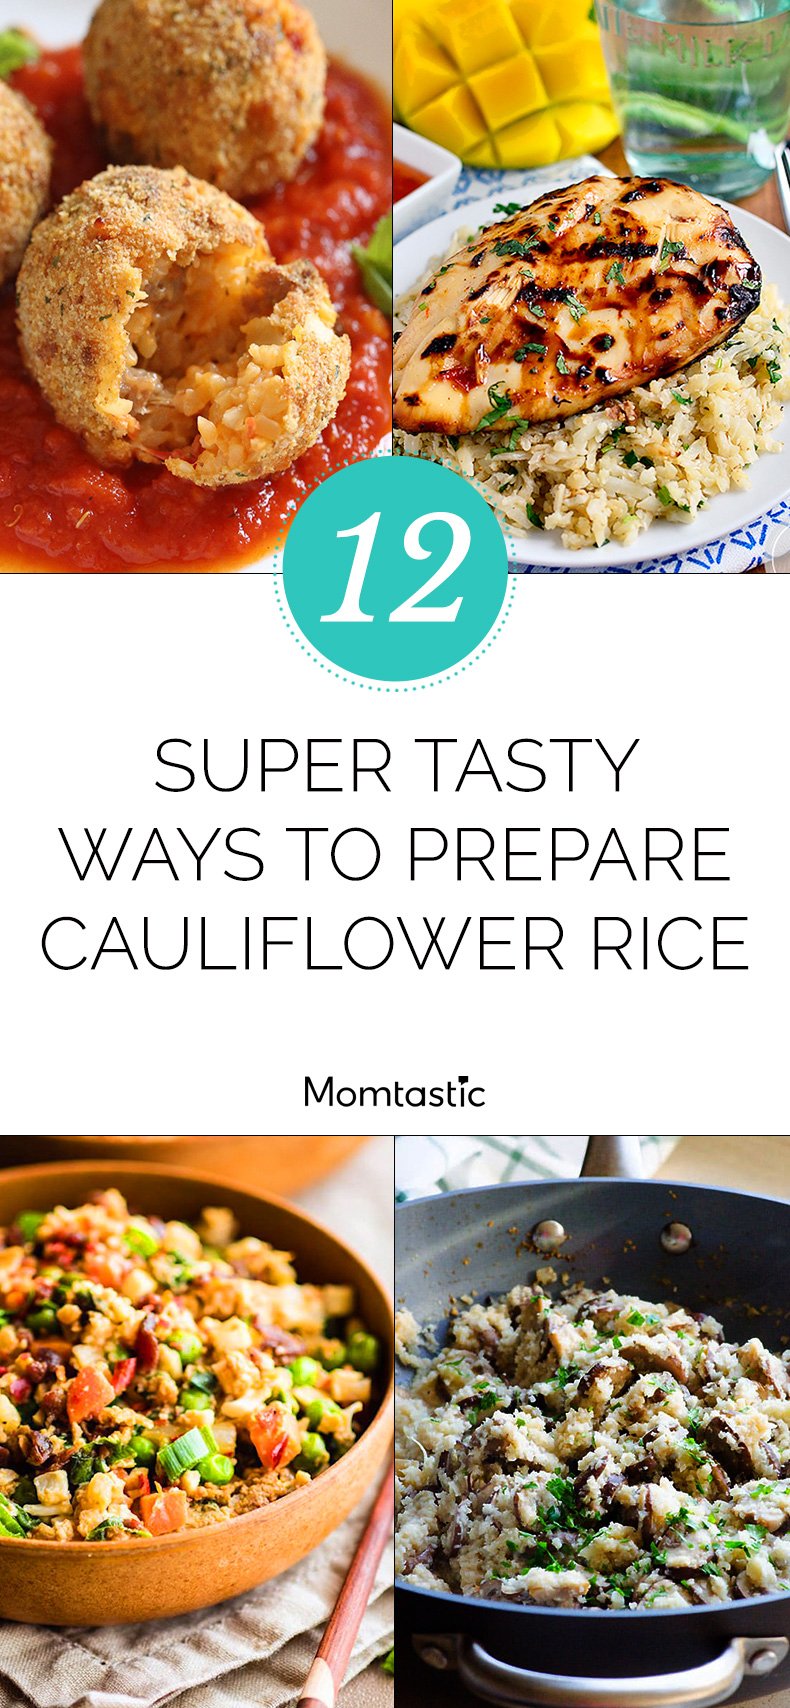 12 Super Tasty Ways to Prepare Cauliflower Rice